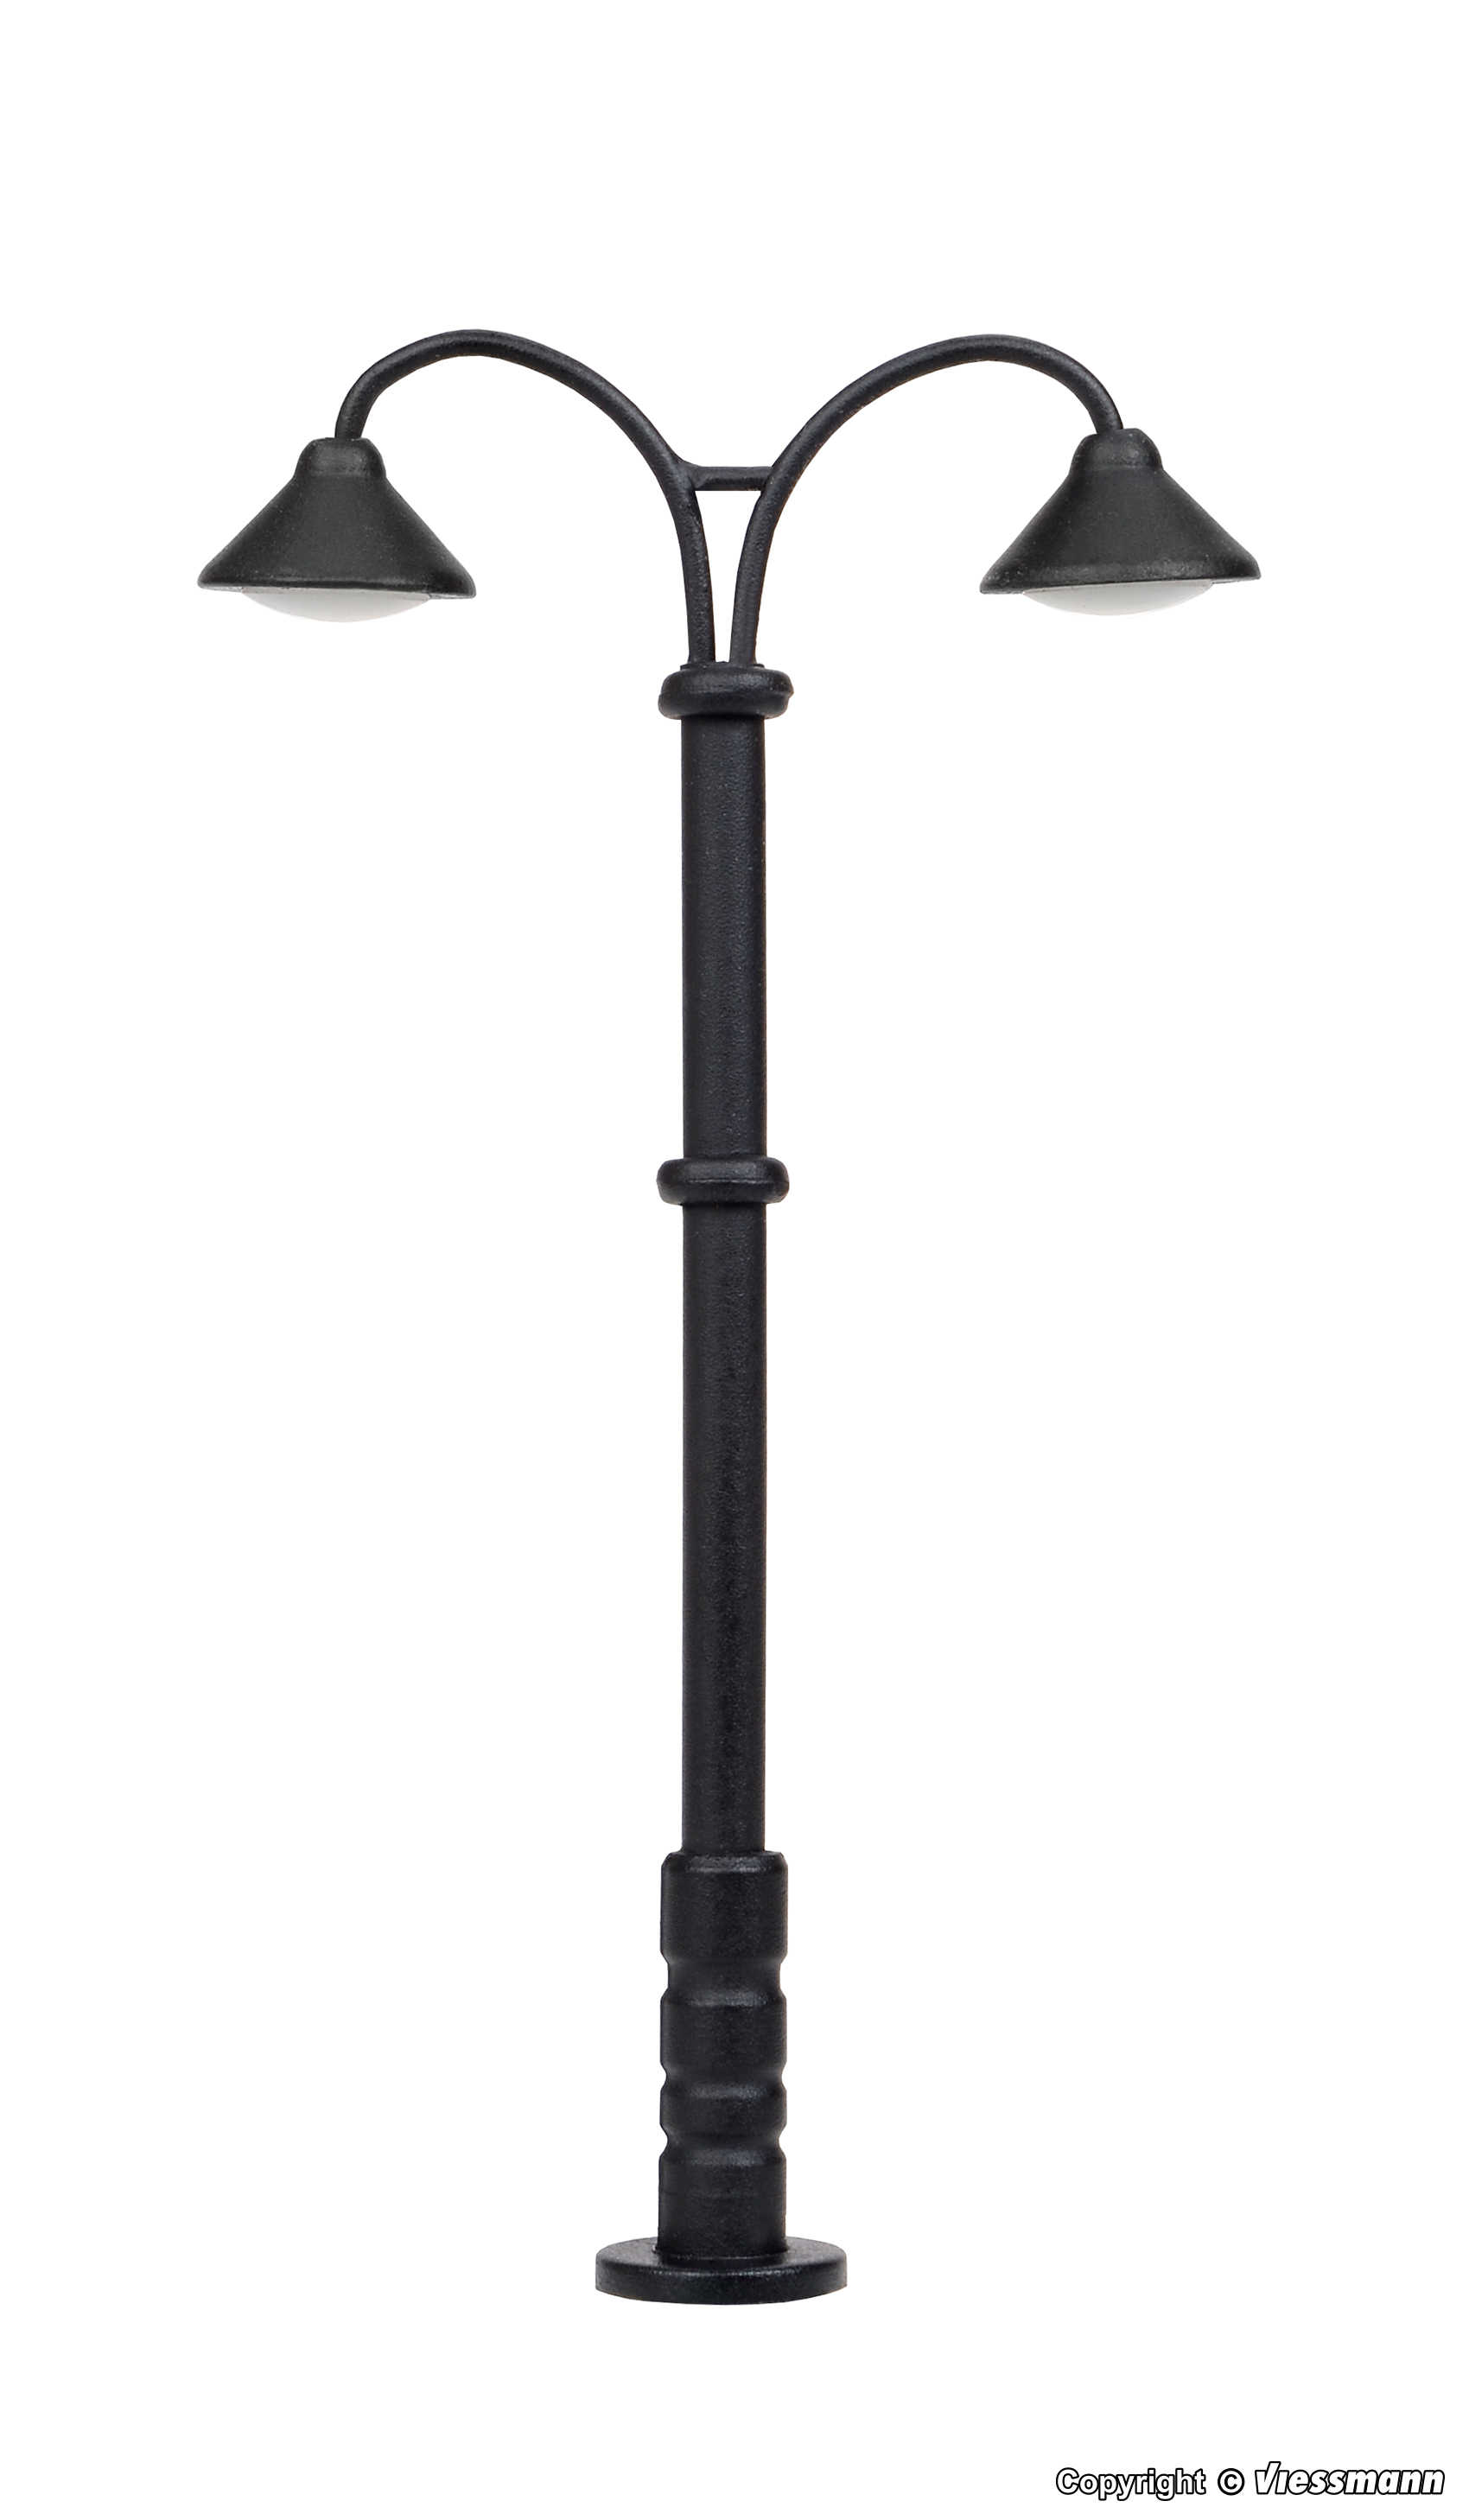 Mini 現貨 Viessmann 6409 N規 Platform lamp 雙頭月台燈 LED 暖白色